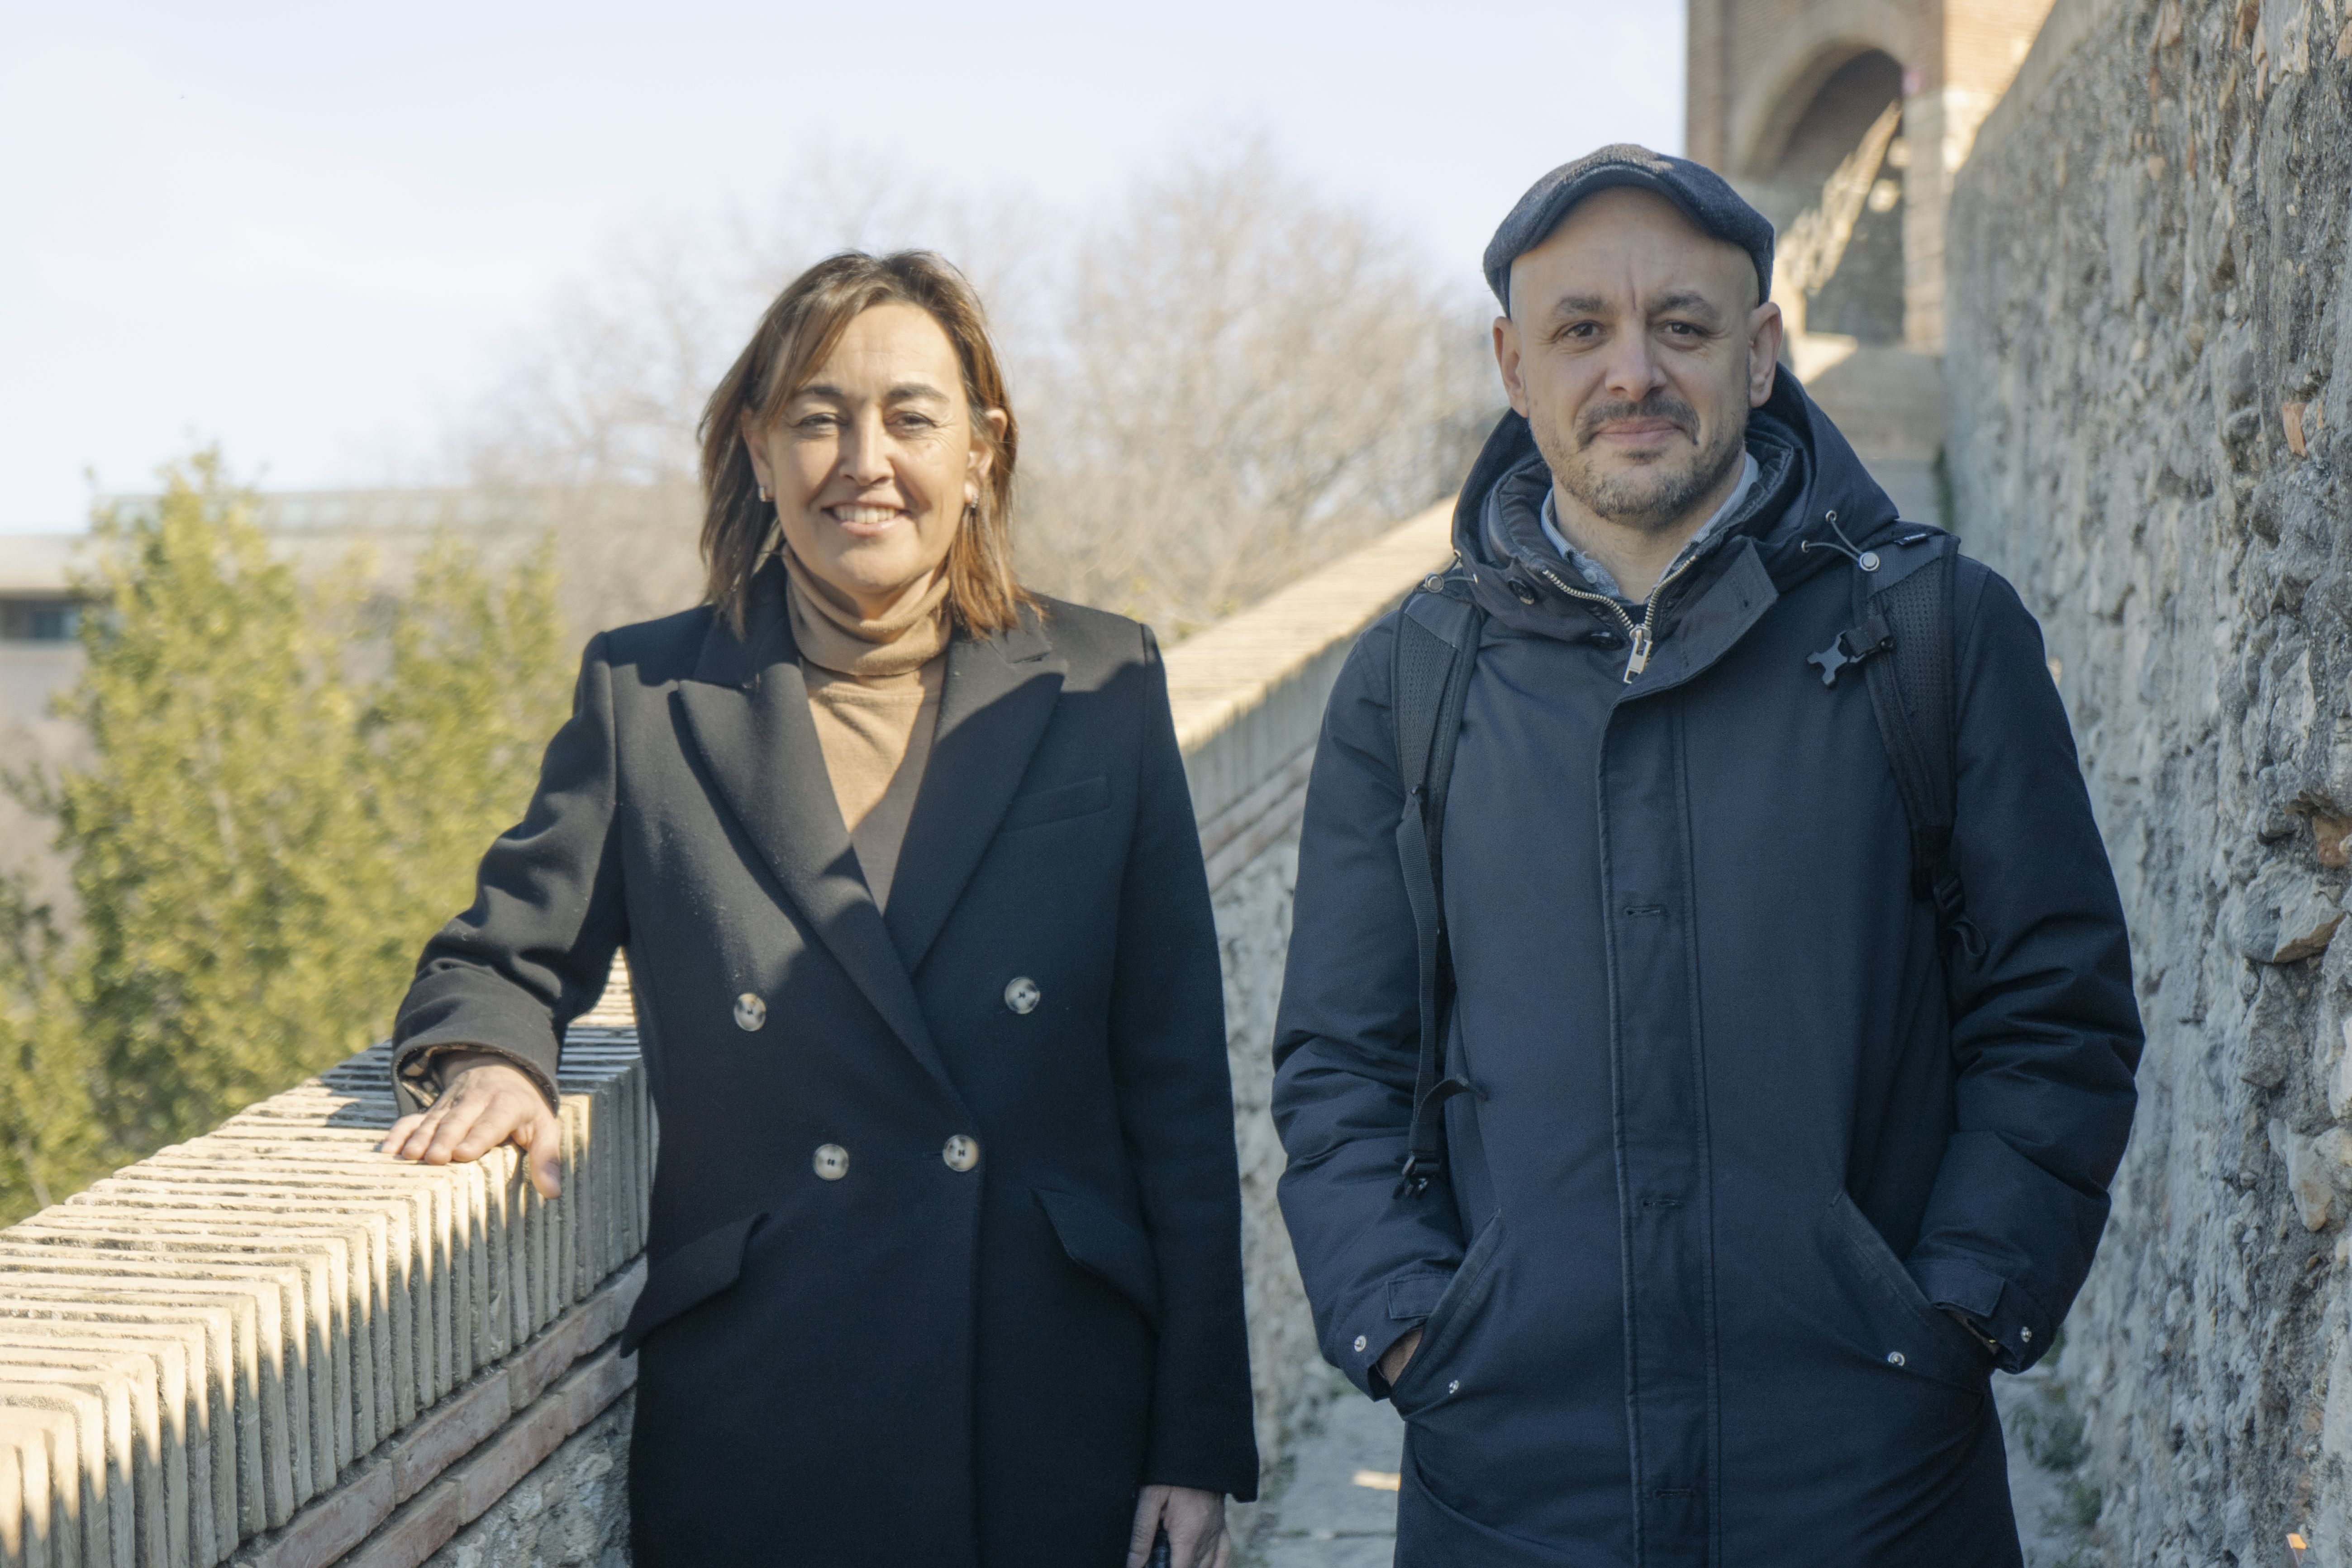 Maxi Fuentes, doctor en Història Contemporània i director de la càtedra Walter Benjamin, serà el número 4 de la llista de Sílvia Paneque a l’Ajuntament de Girona